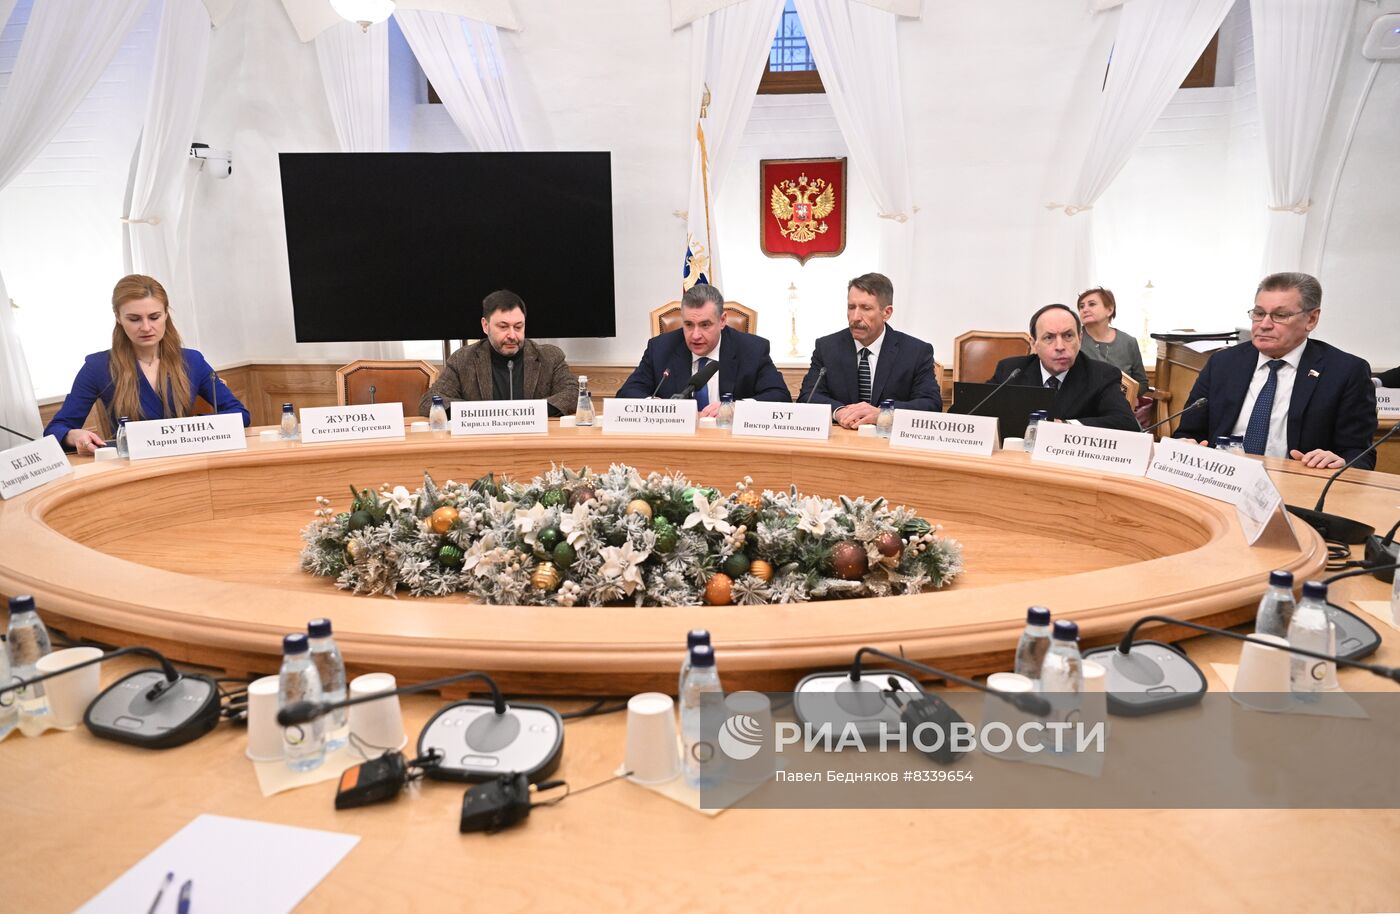 Расширенное заседание комитета ГД по международным делам по вопросам помощи гражданам России, попавшим в тяжелую ситуацию за рубежом